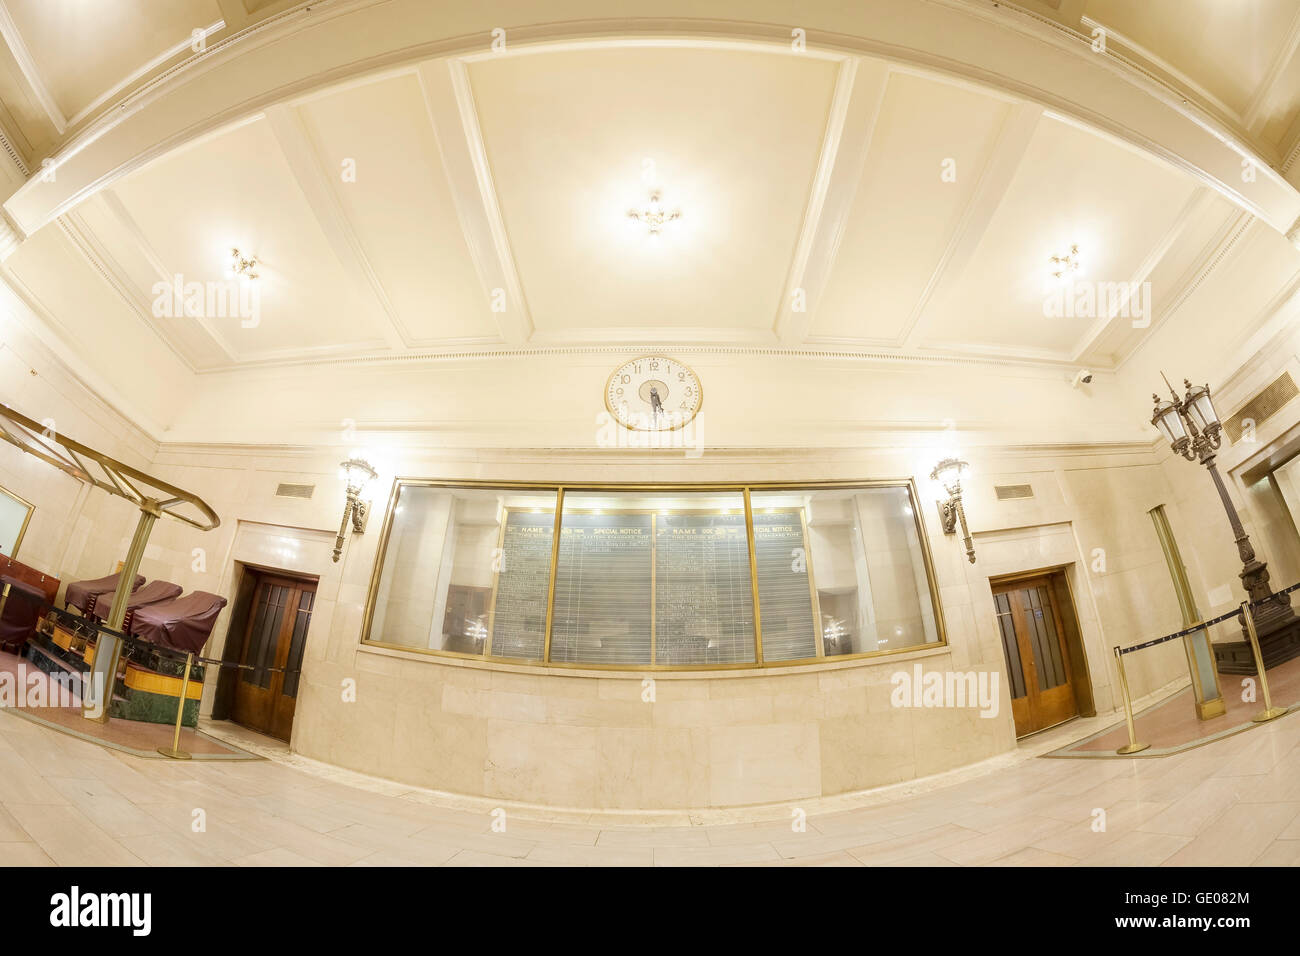 Obiettivo Fisheye foto di Grand Central Terminal interno con calendario. Foto Stock